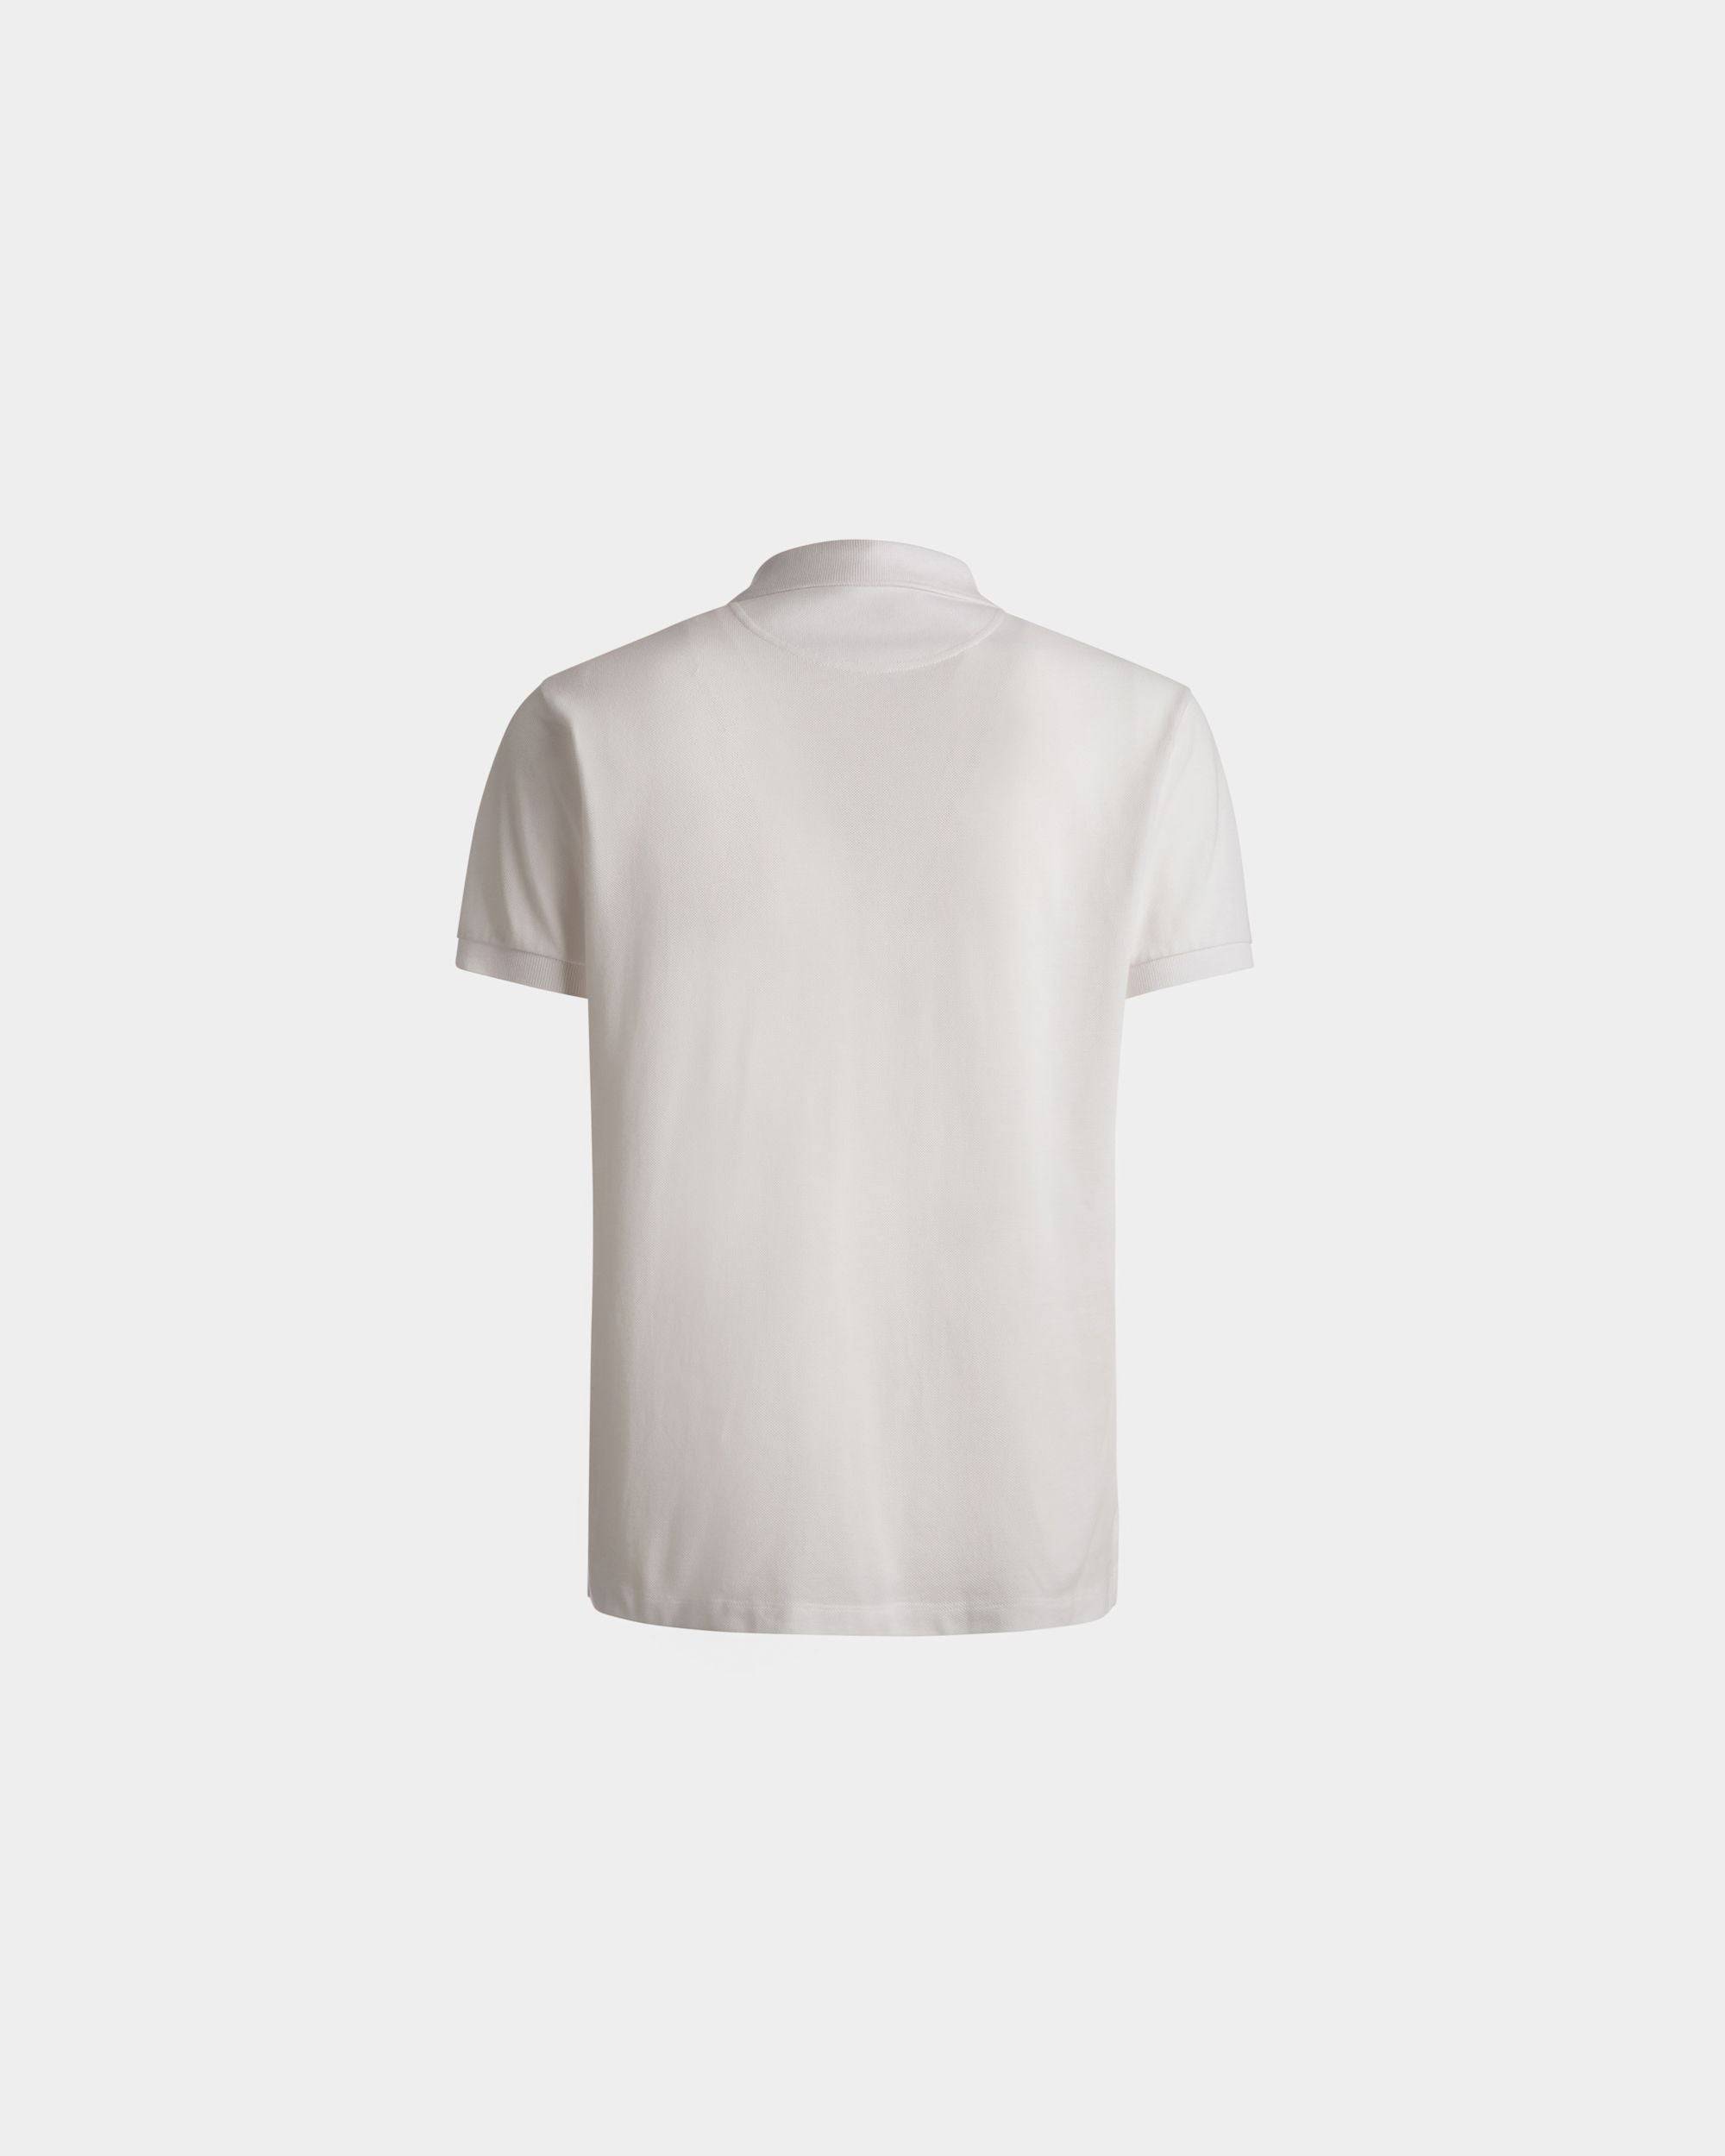 Kurzarm-Poloshirt | Poloshirt für Herren | Weiße Baumwolle | Bally | Still Life Rückseite